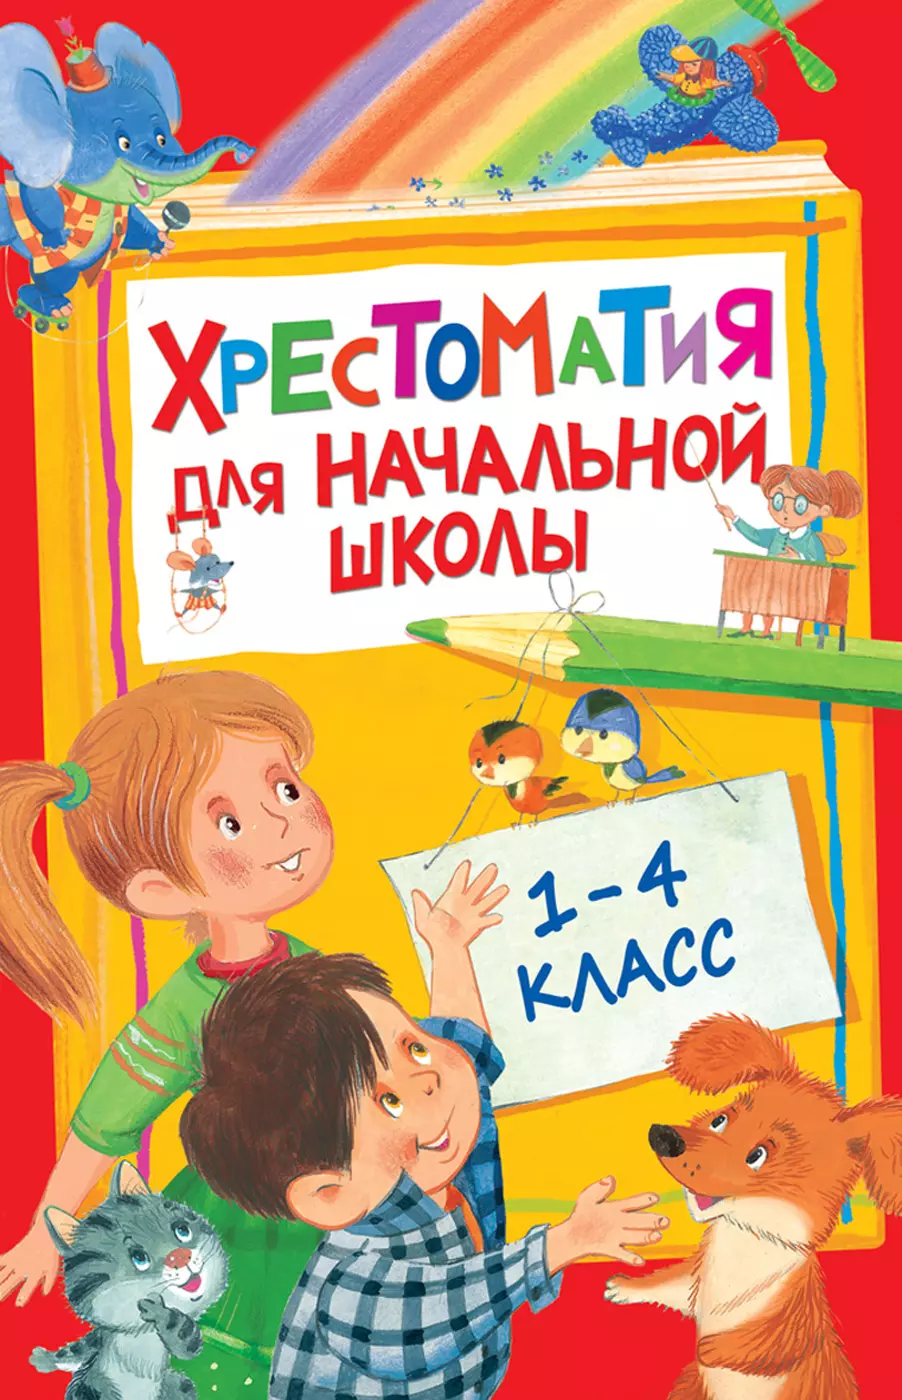 Хрестоматия для начальной школы. 1-4 класс. изд. Росмэн